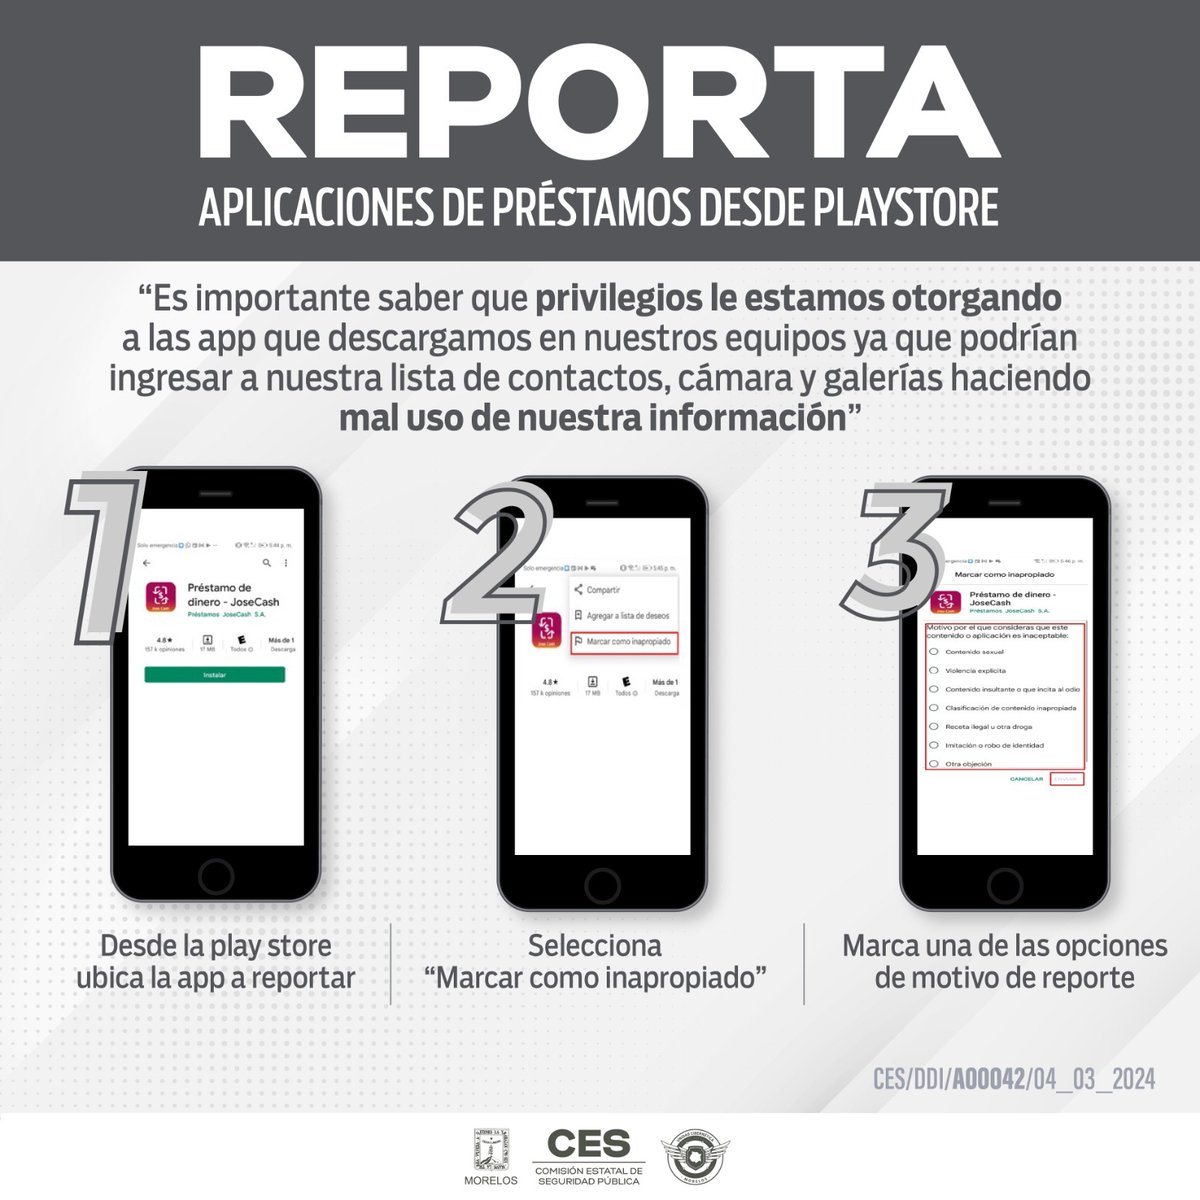 Conoce los pasos para reportar aplicaciones falsas 🚫📱⚠️ 

#Morelos #PolicíaMorelos #Seguridad #SeguriChat #CesMorelos